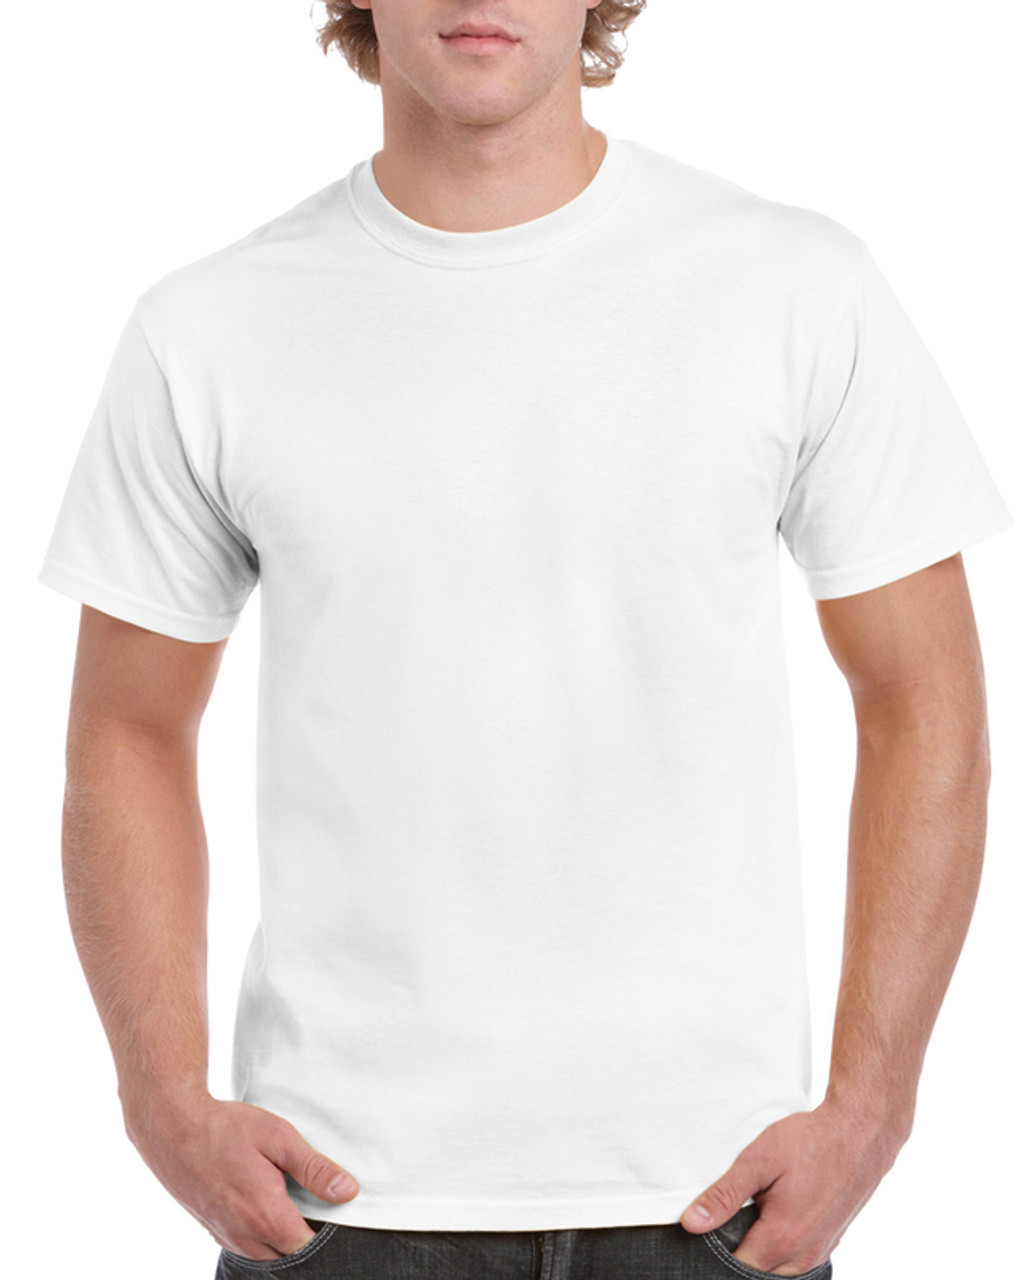 Adult T-Shirts 100